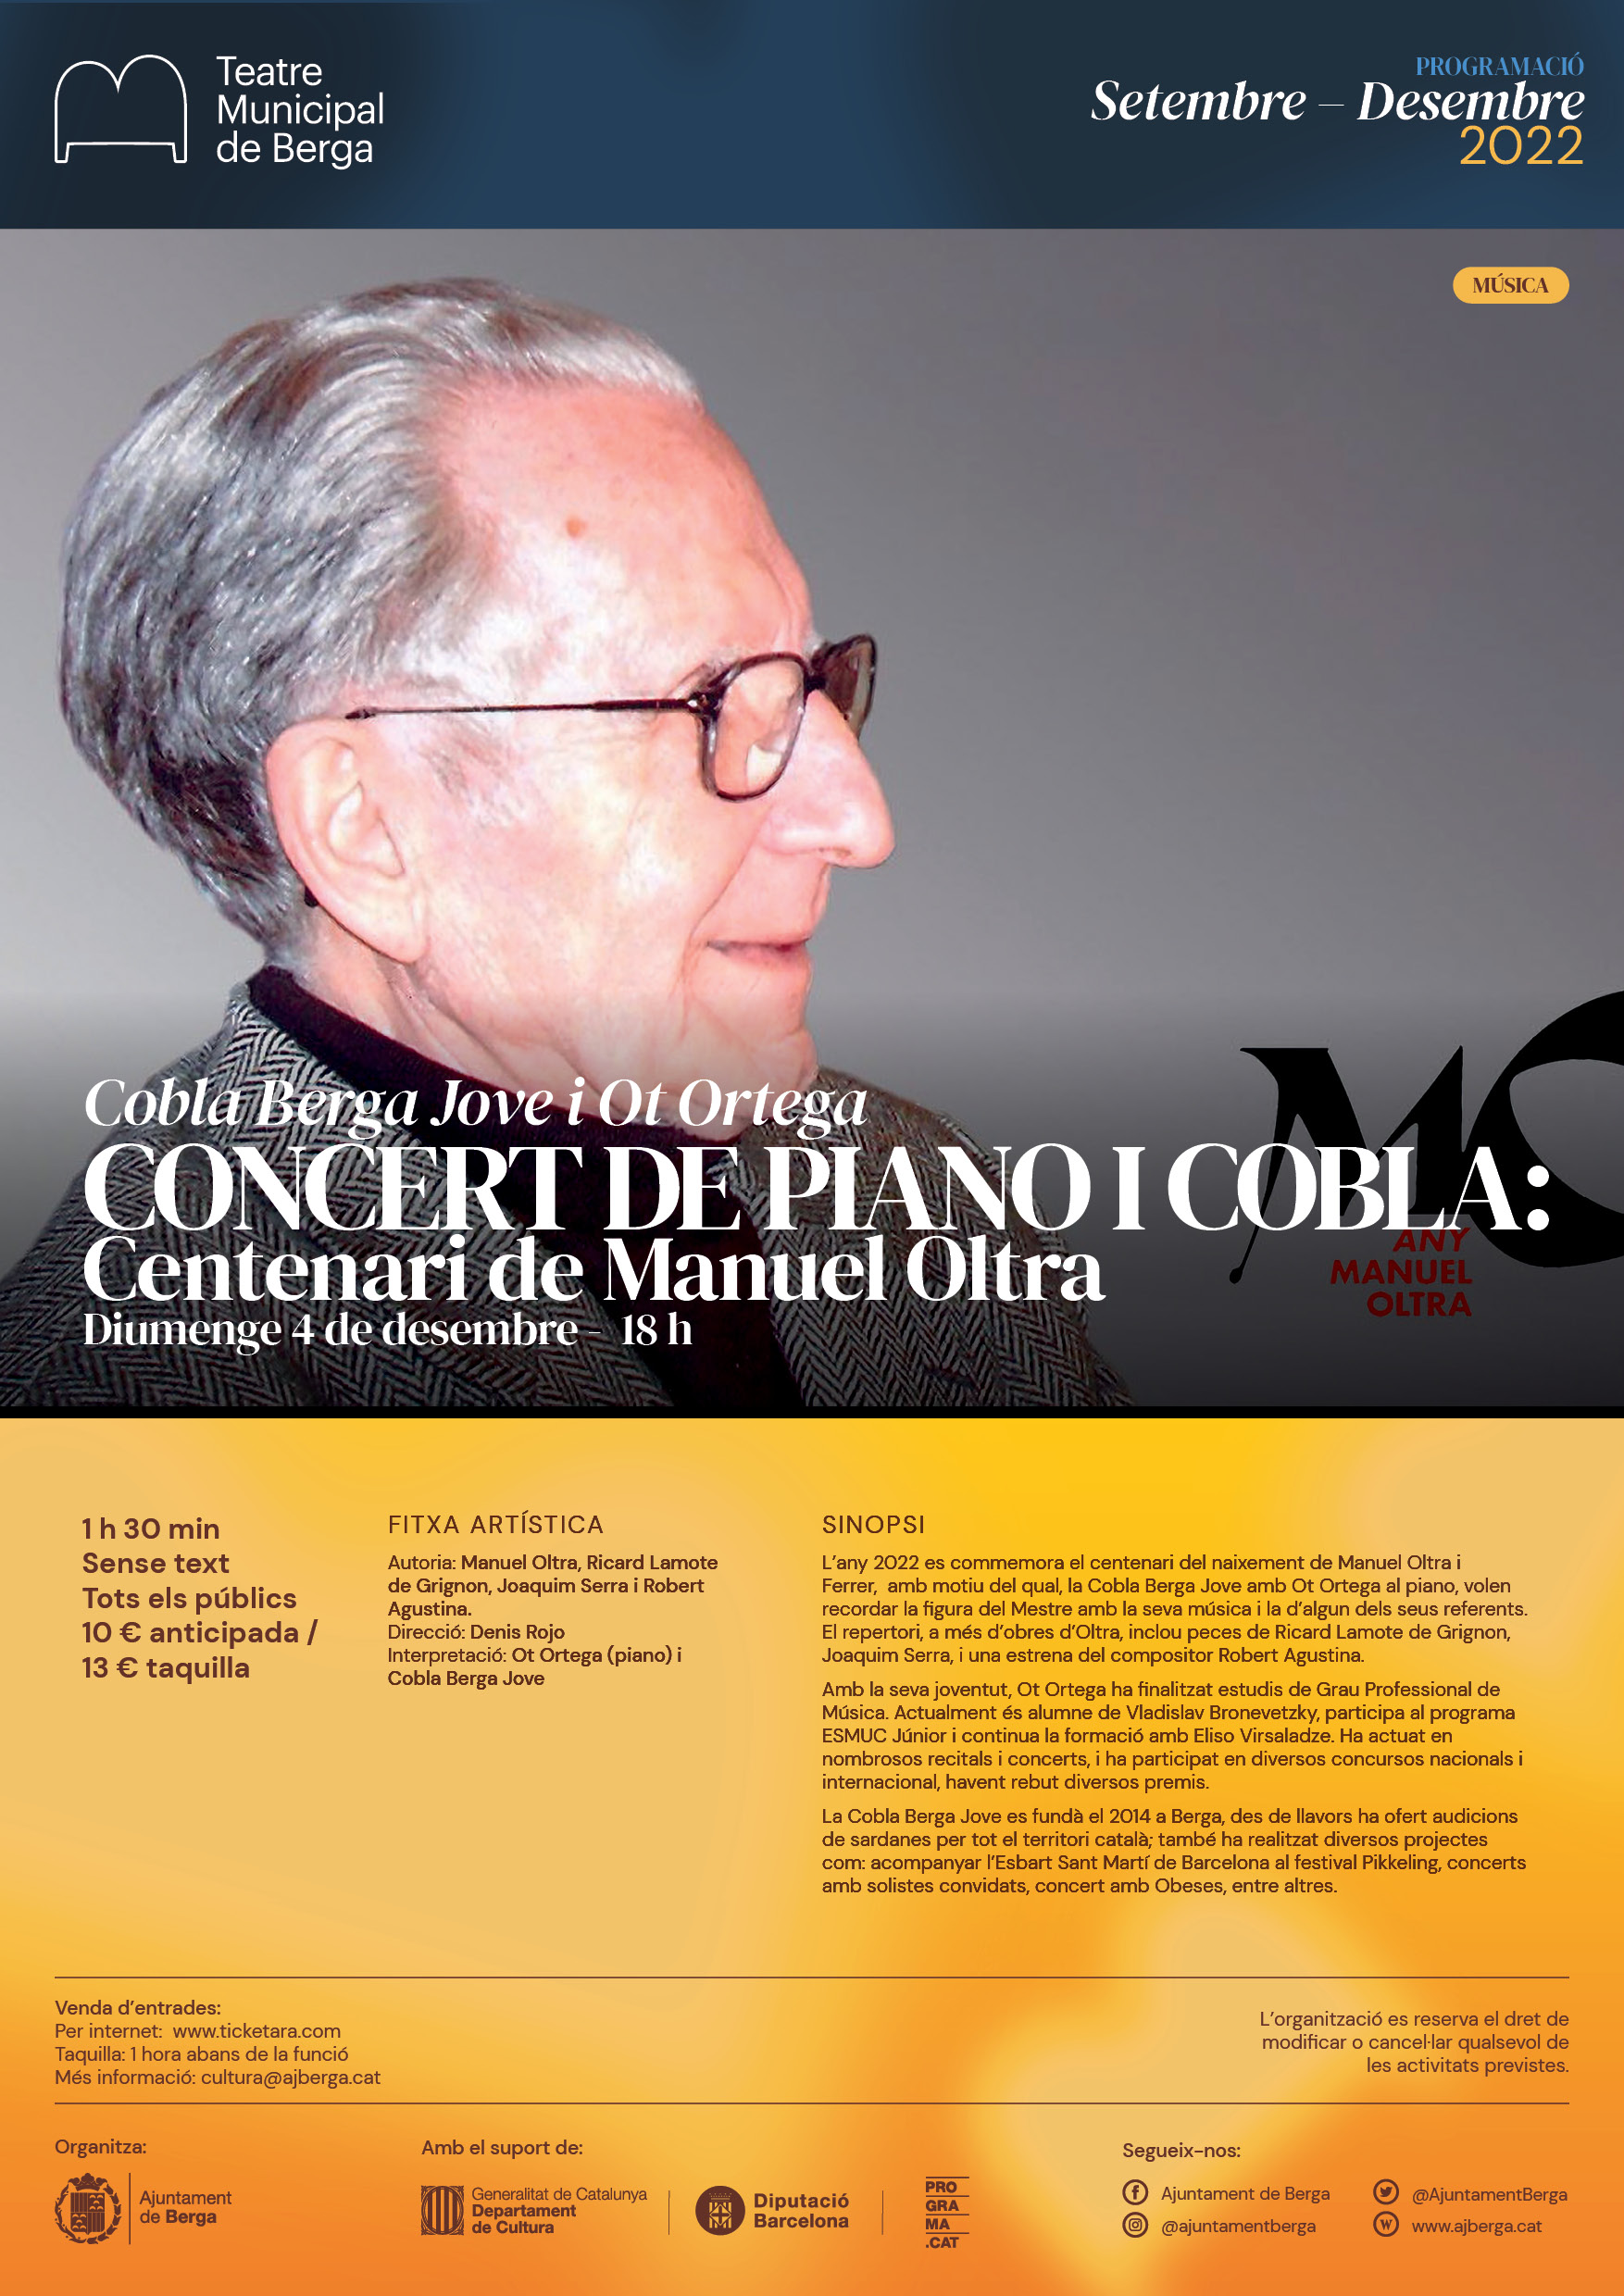 Concert: Centenari de Manuel Oltra amb Ot Ortega i la Cobla Berga Jove